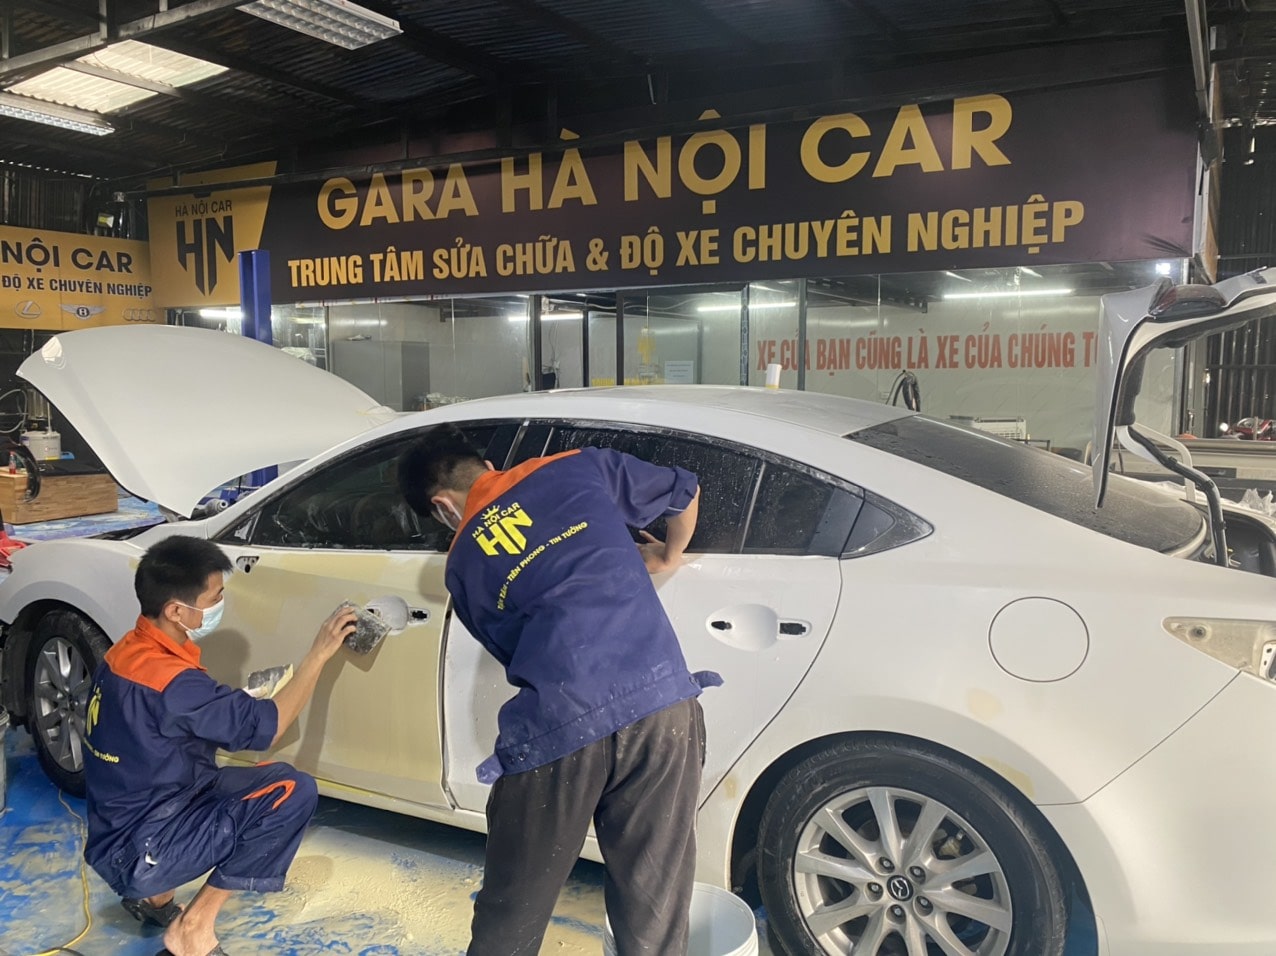 Gara Hà Nội Car 